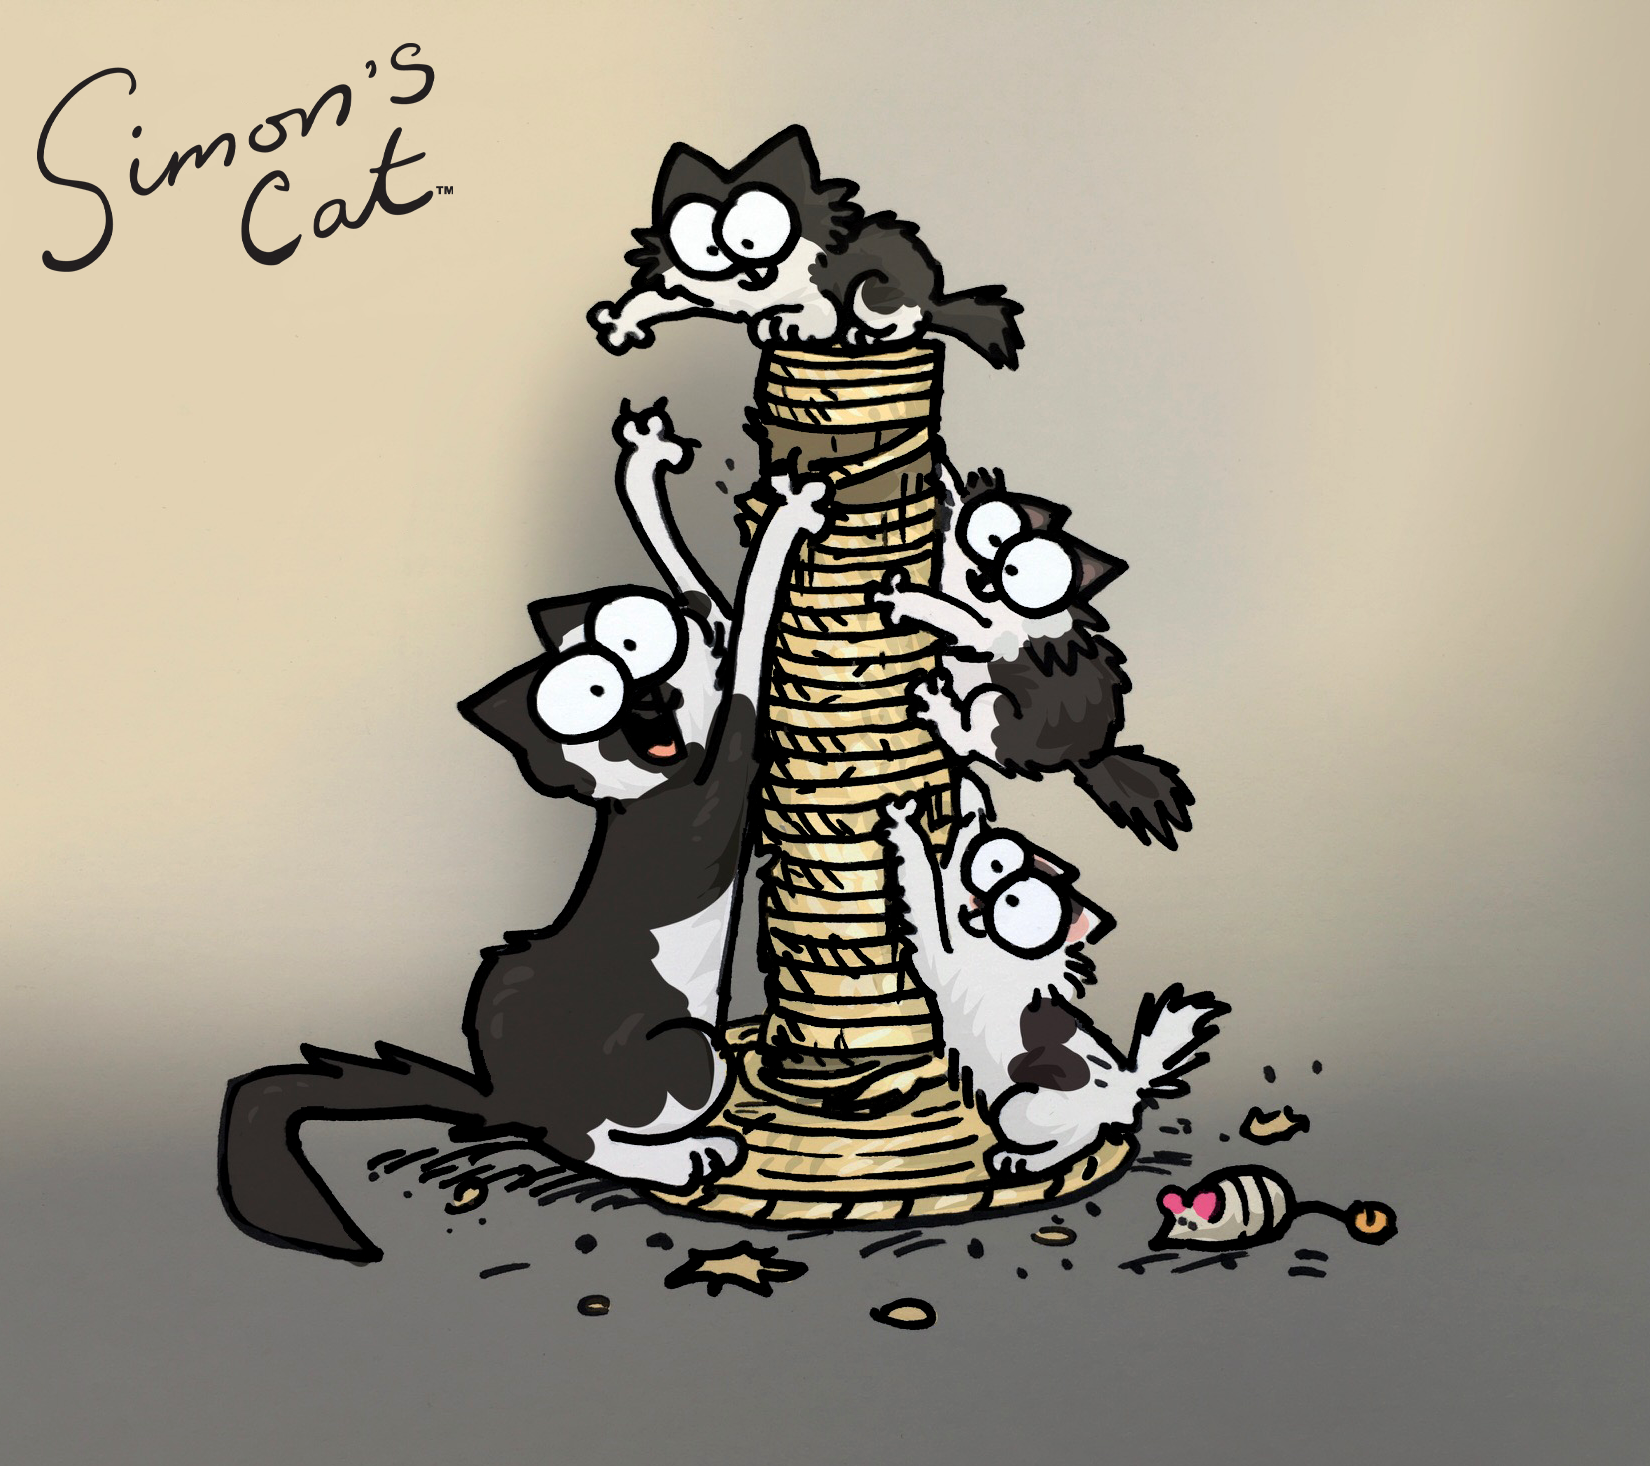 A gata patrocinadora Princess e seus gatinhos fofos foram desenhados pelo famoso ilustrador Simon Tofield